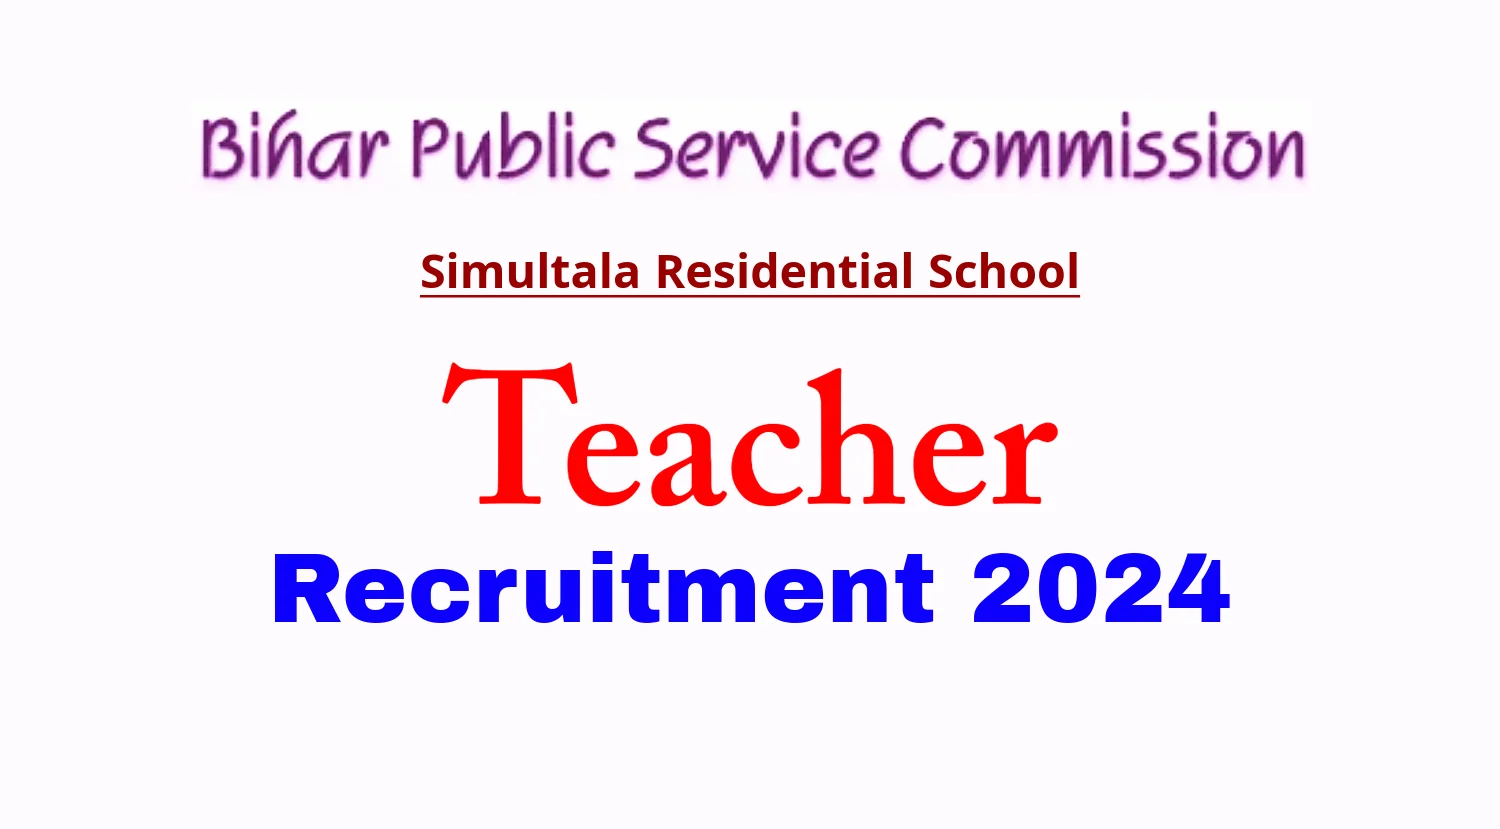 BPSC Teacher Recruitment 2024 Simultala Residential School